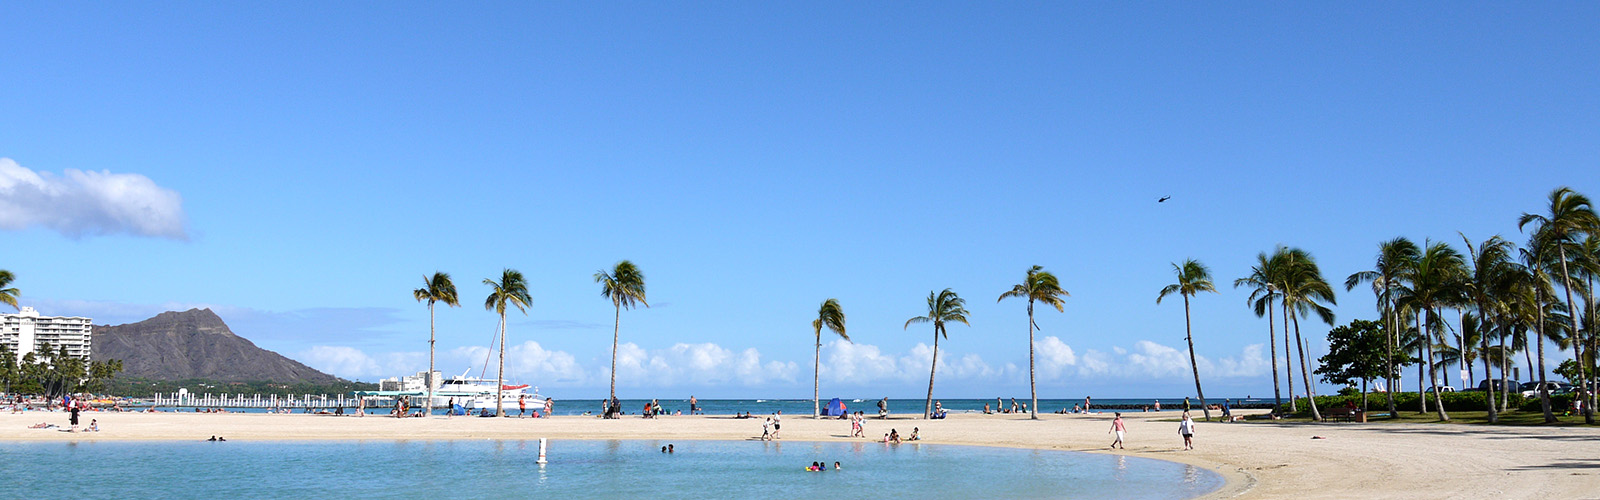 ハワイアンなビーチ